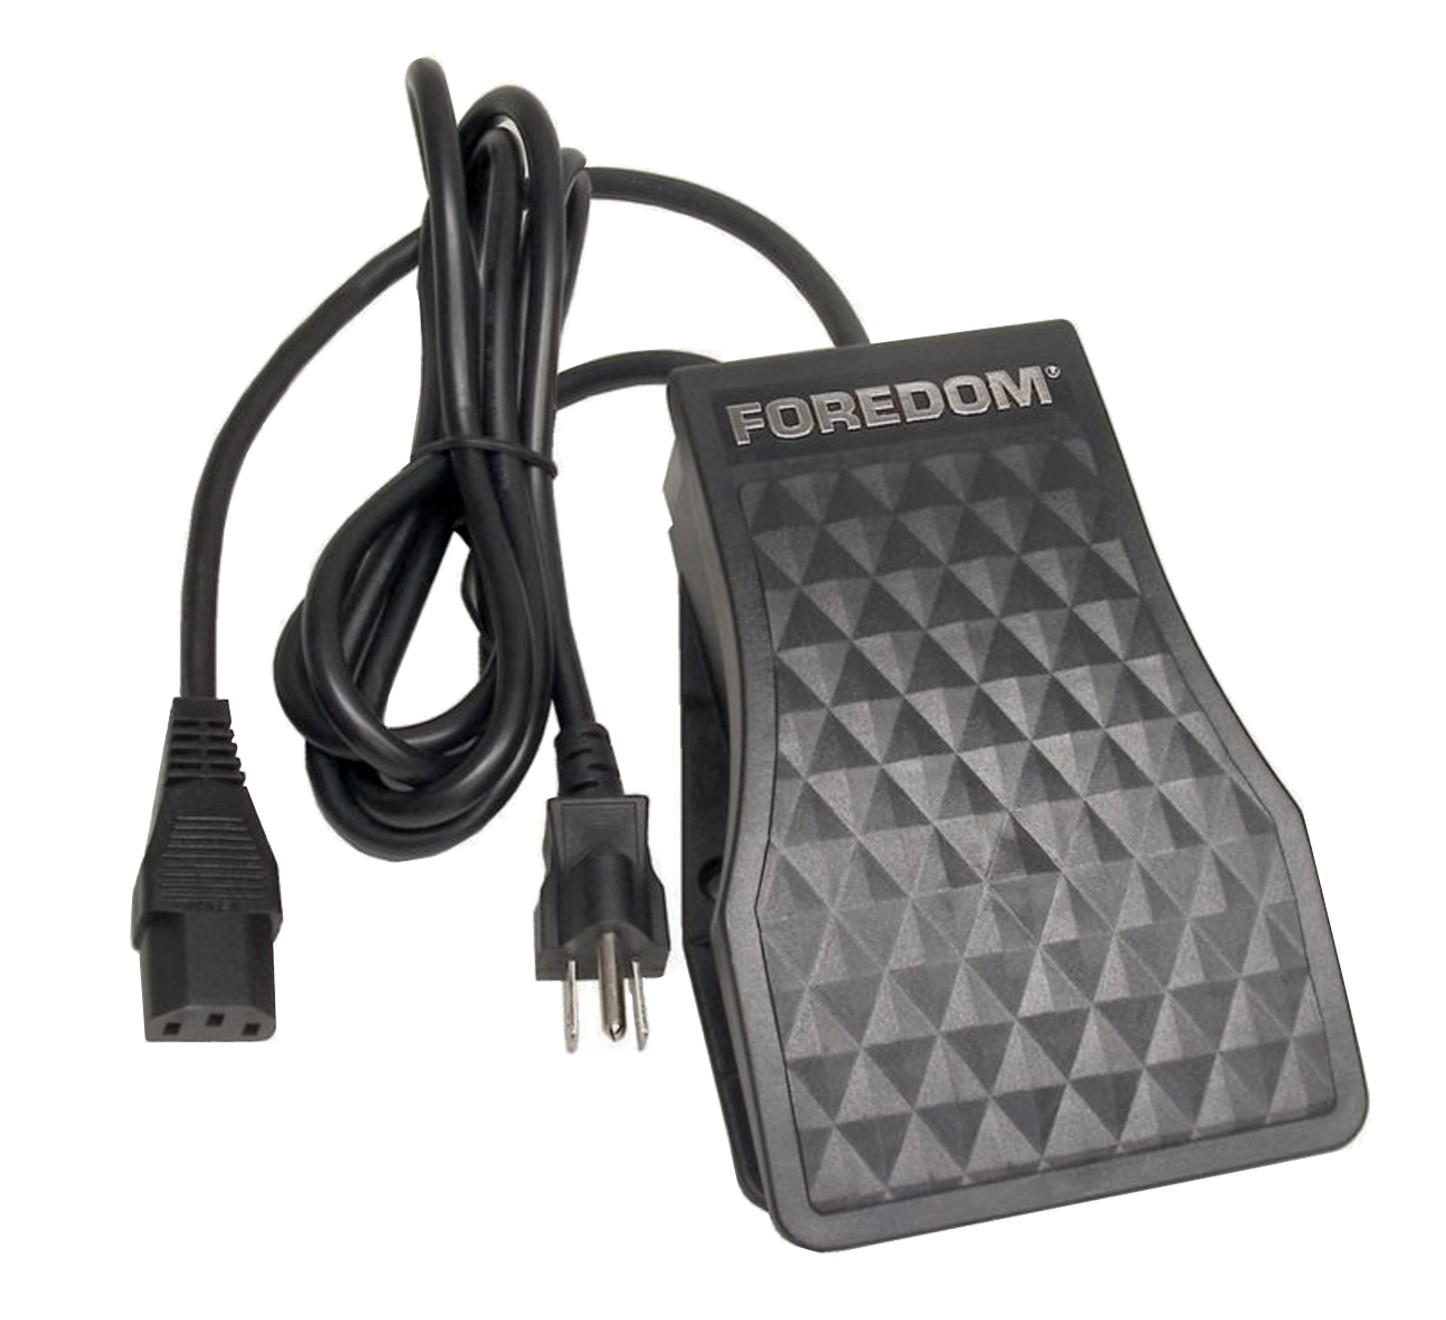 Foredom Foot Control, 115 Volt - C.TXR-1